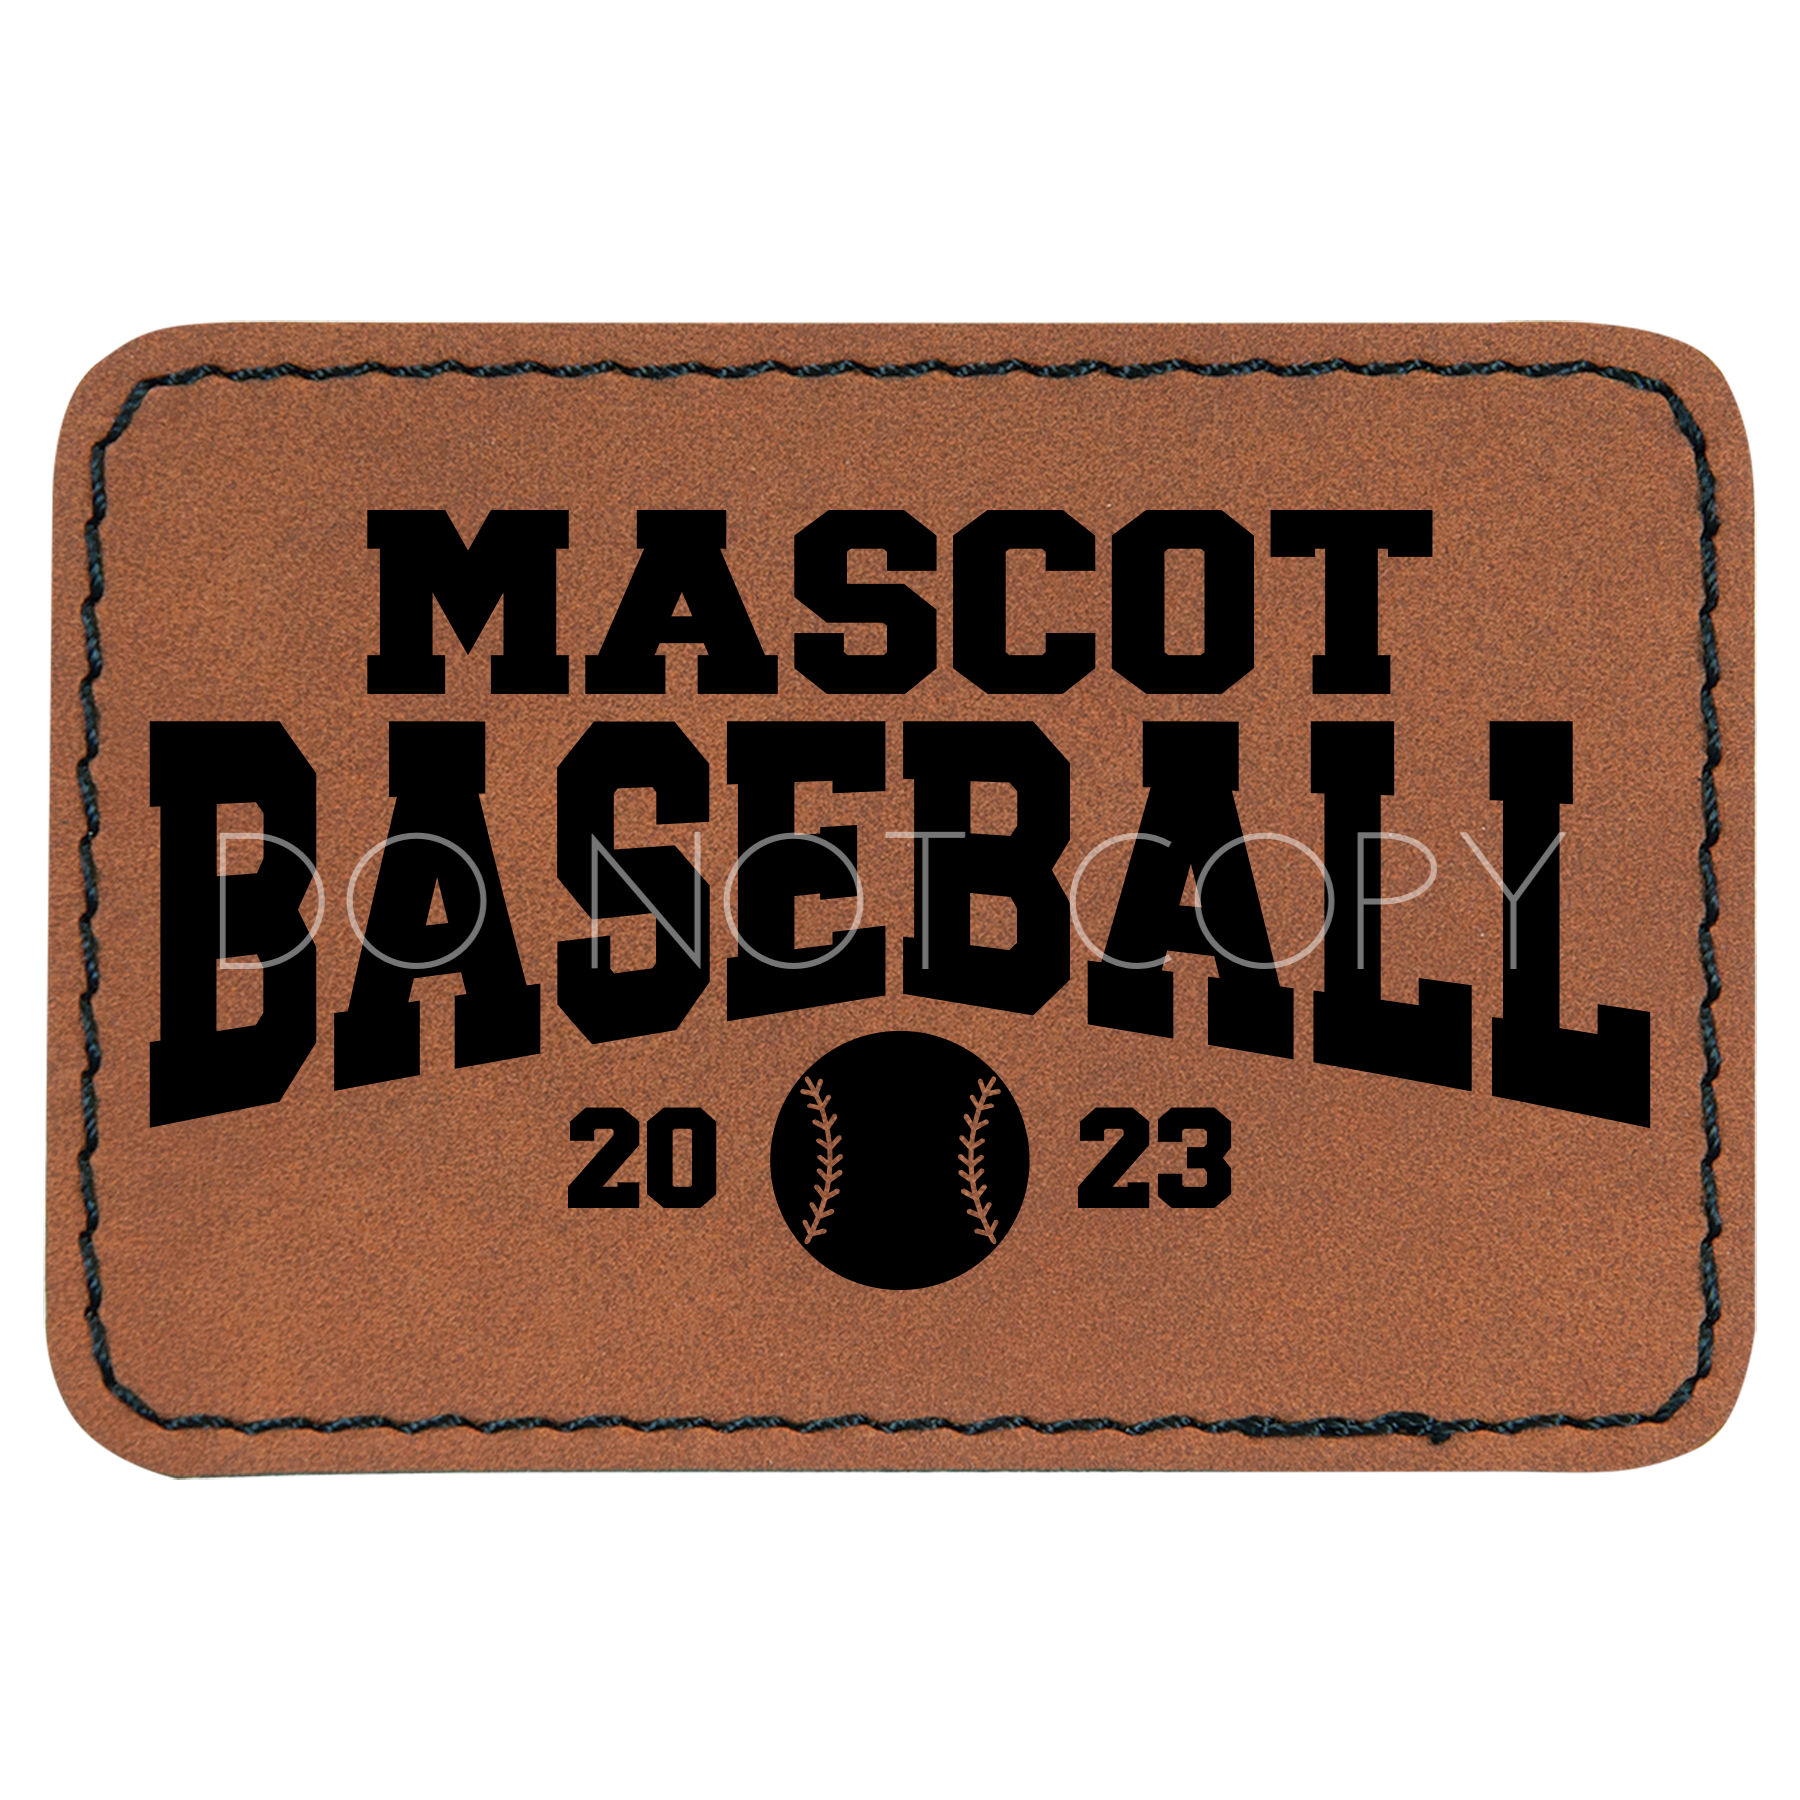 Mascot Baseball Year Patch